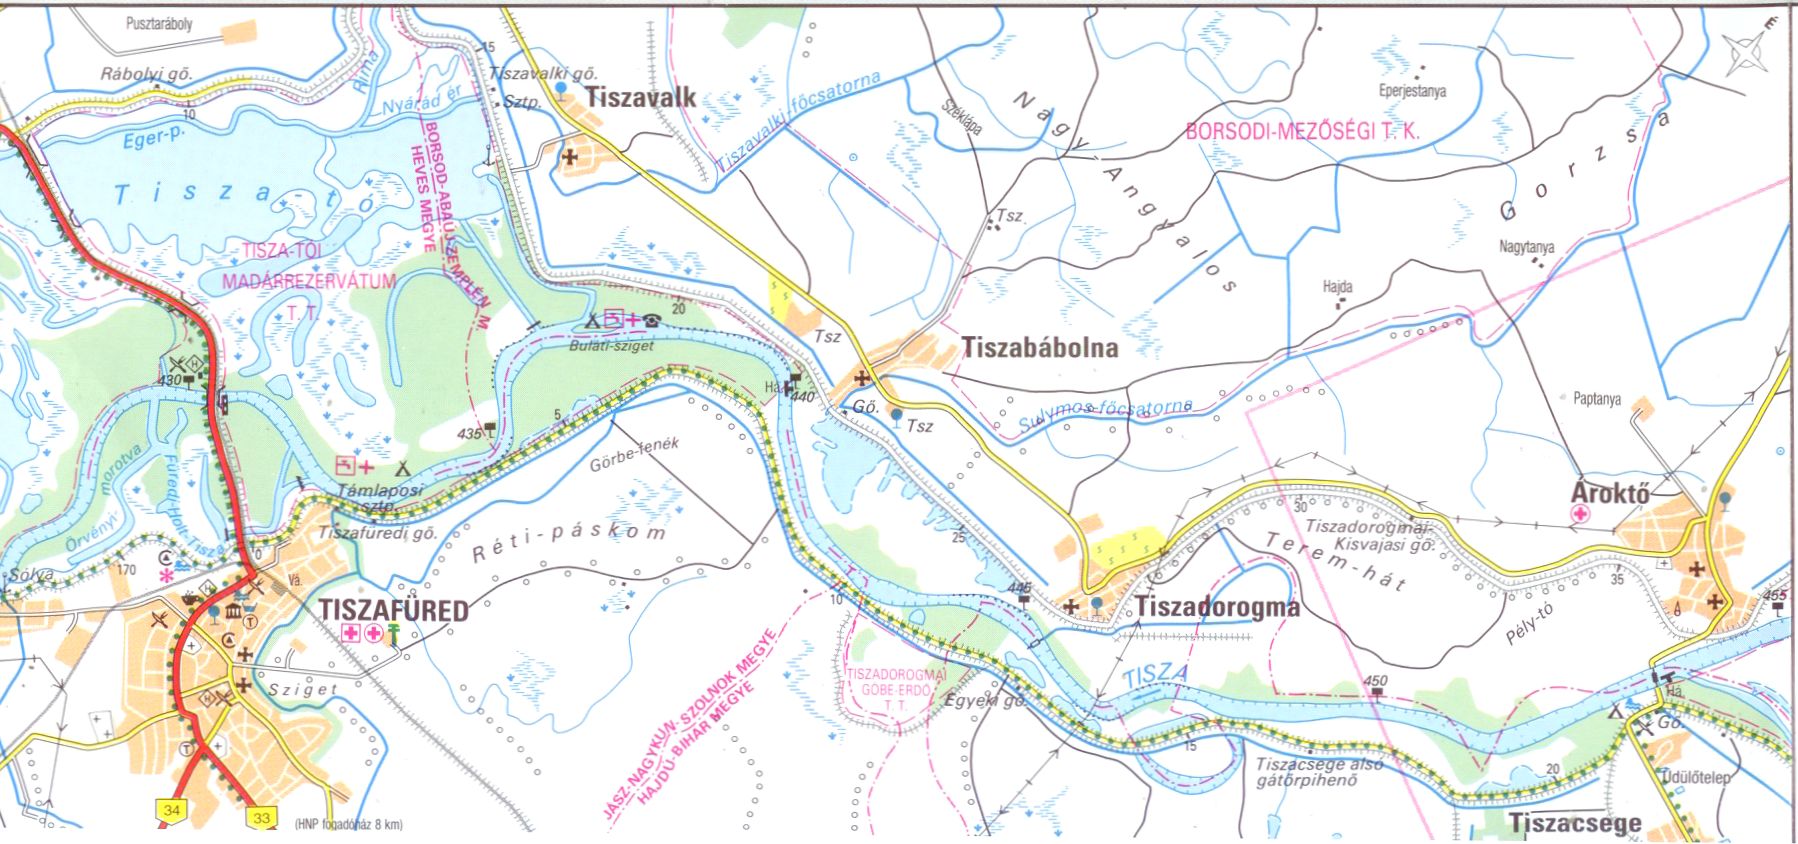 Tisza sample map 1:100.000